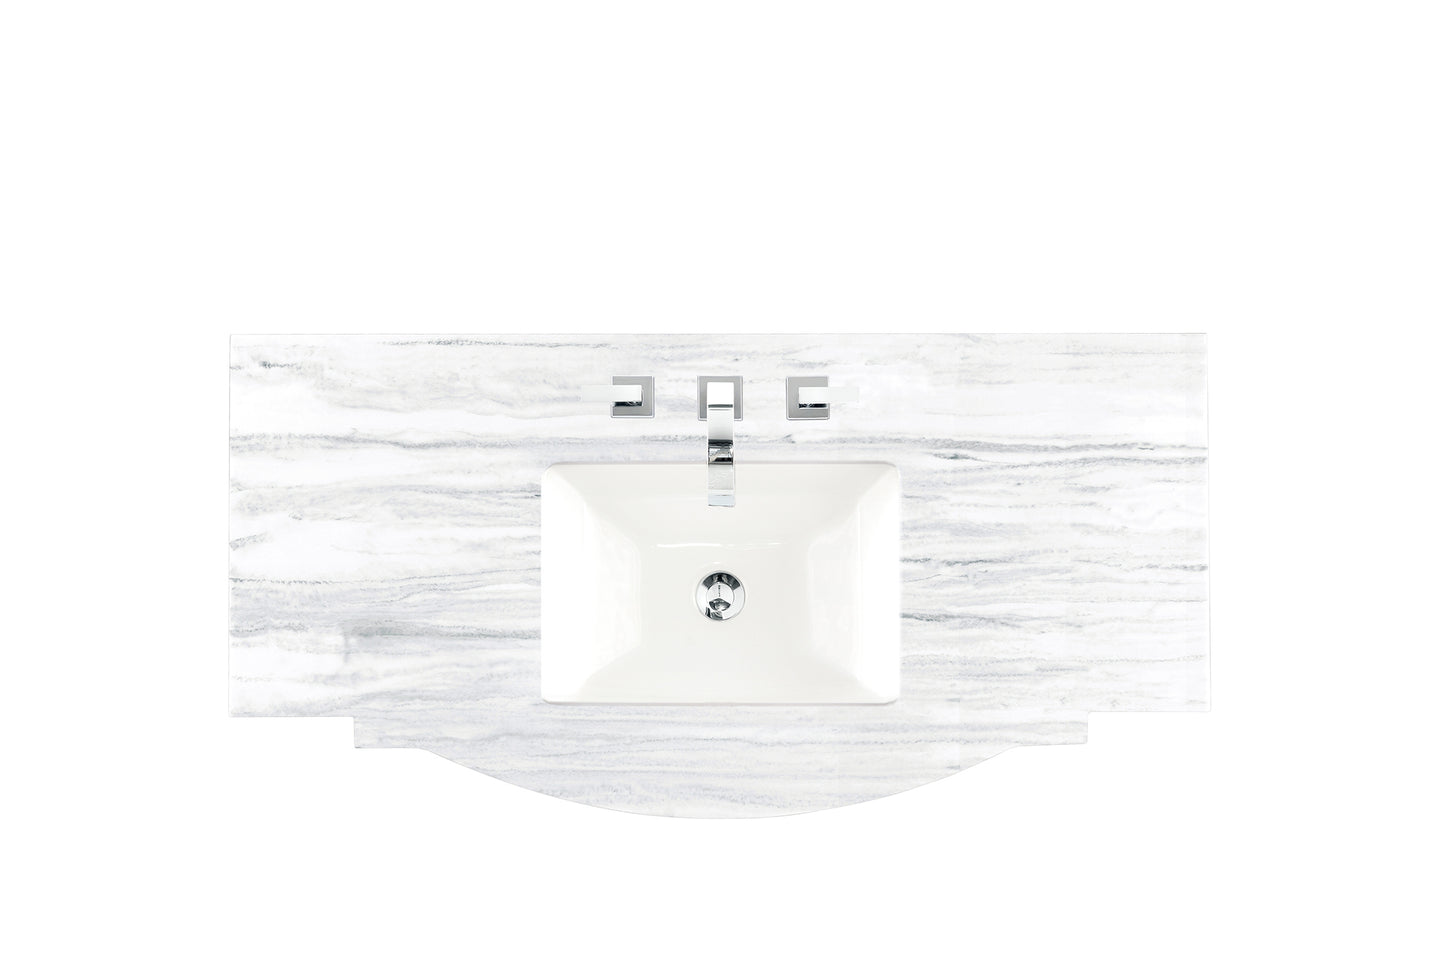 James Martin 46" Single Top, 3 CM - Luxe Bathroom Vanities